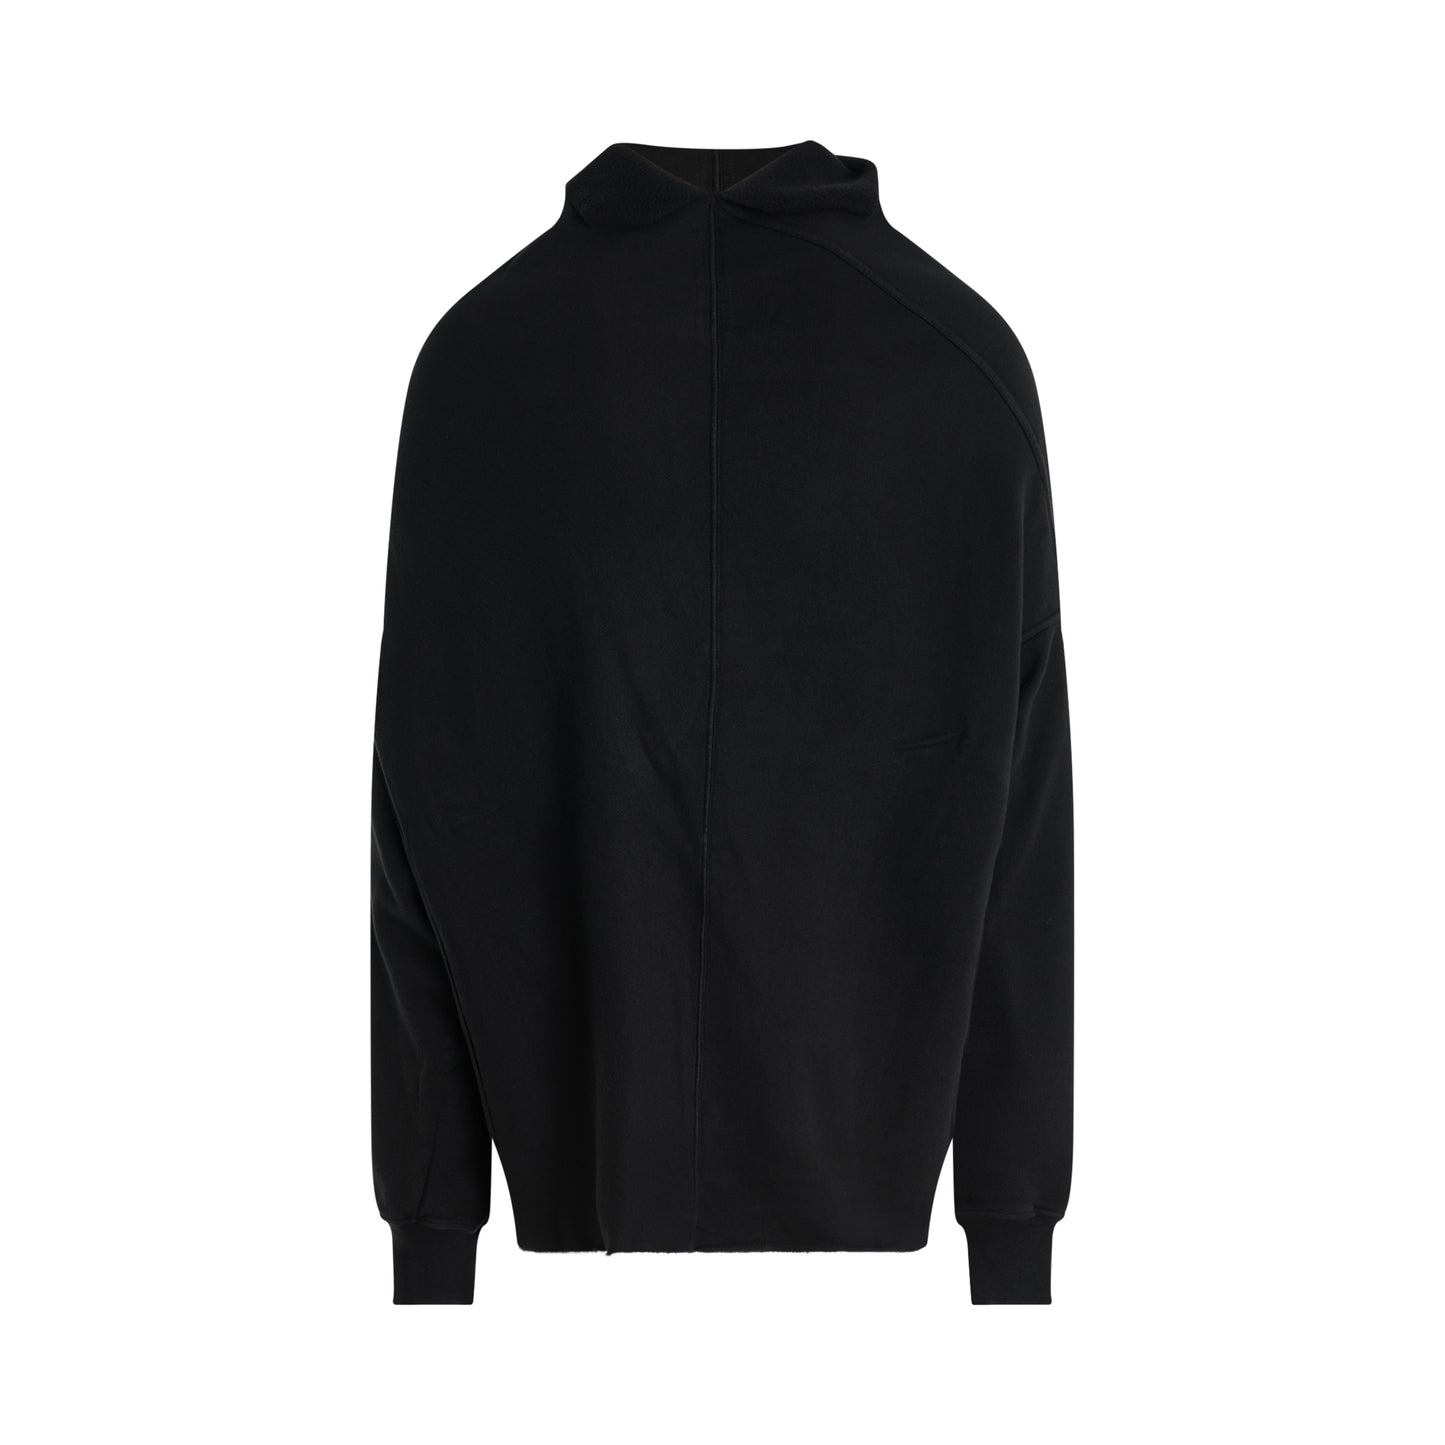 Shroud Sweatshirt in Black